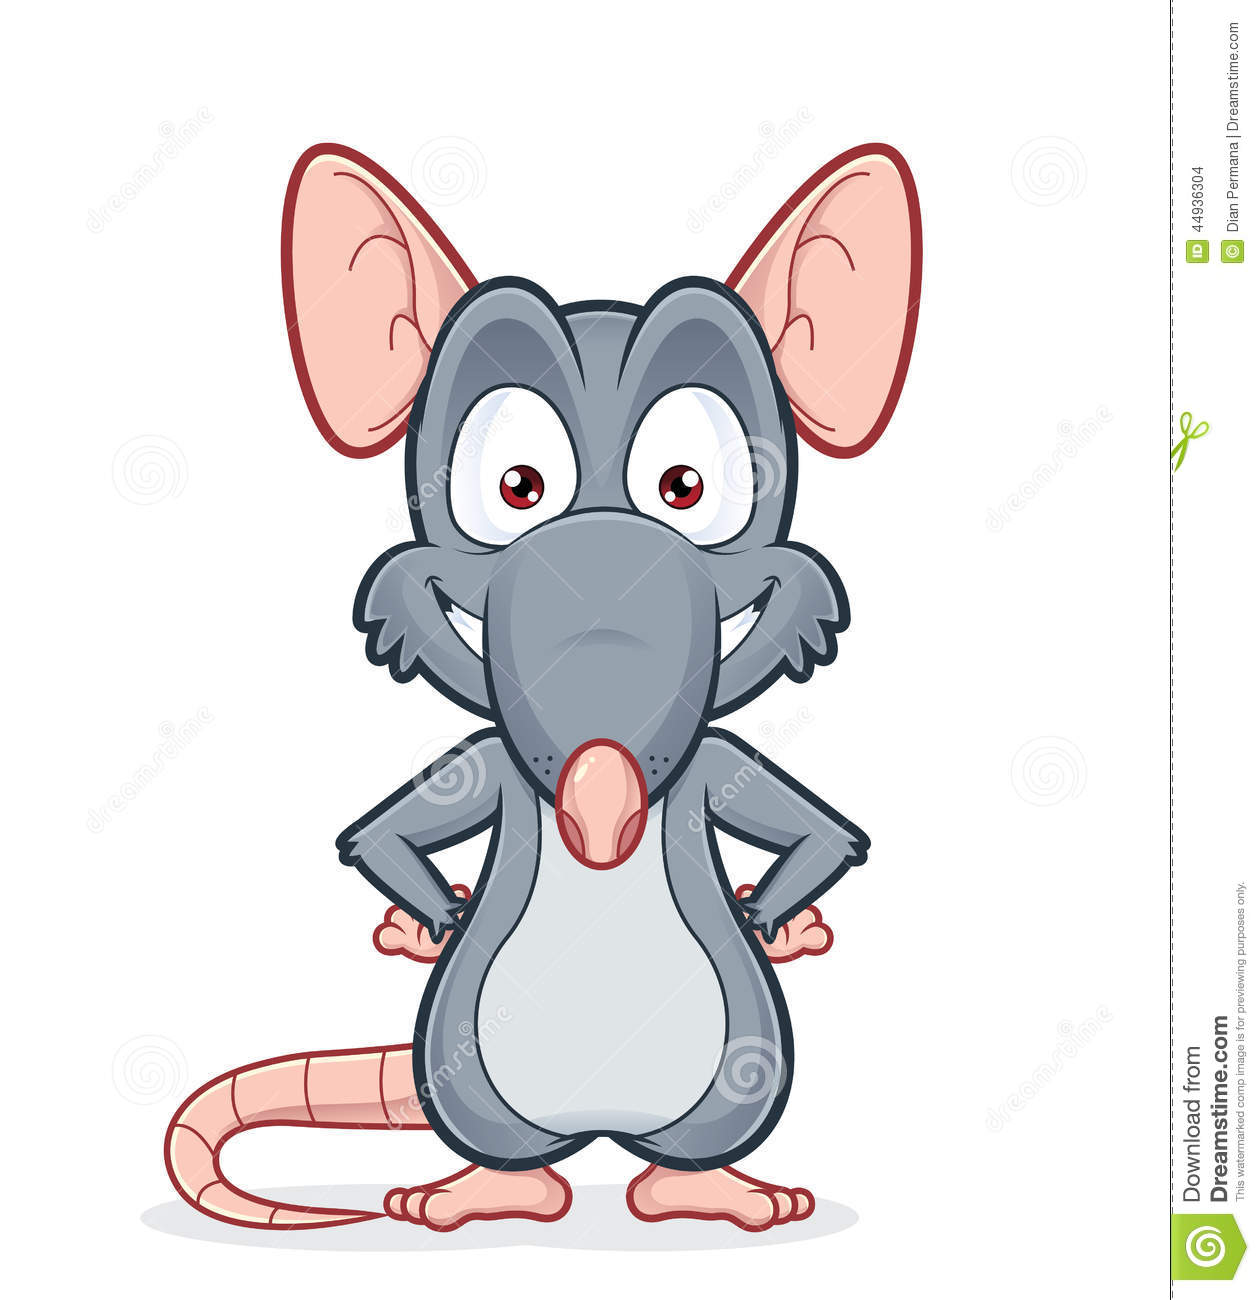 rat clipart comic